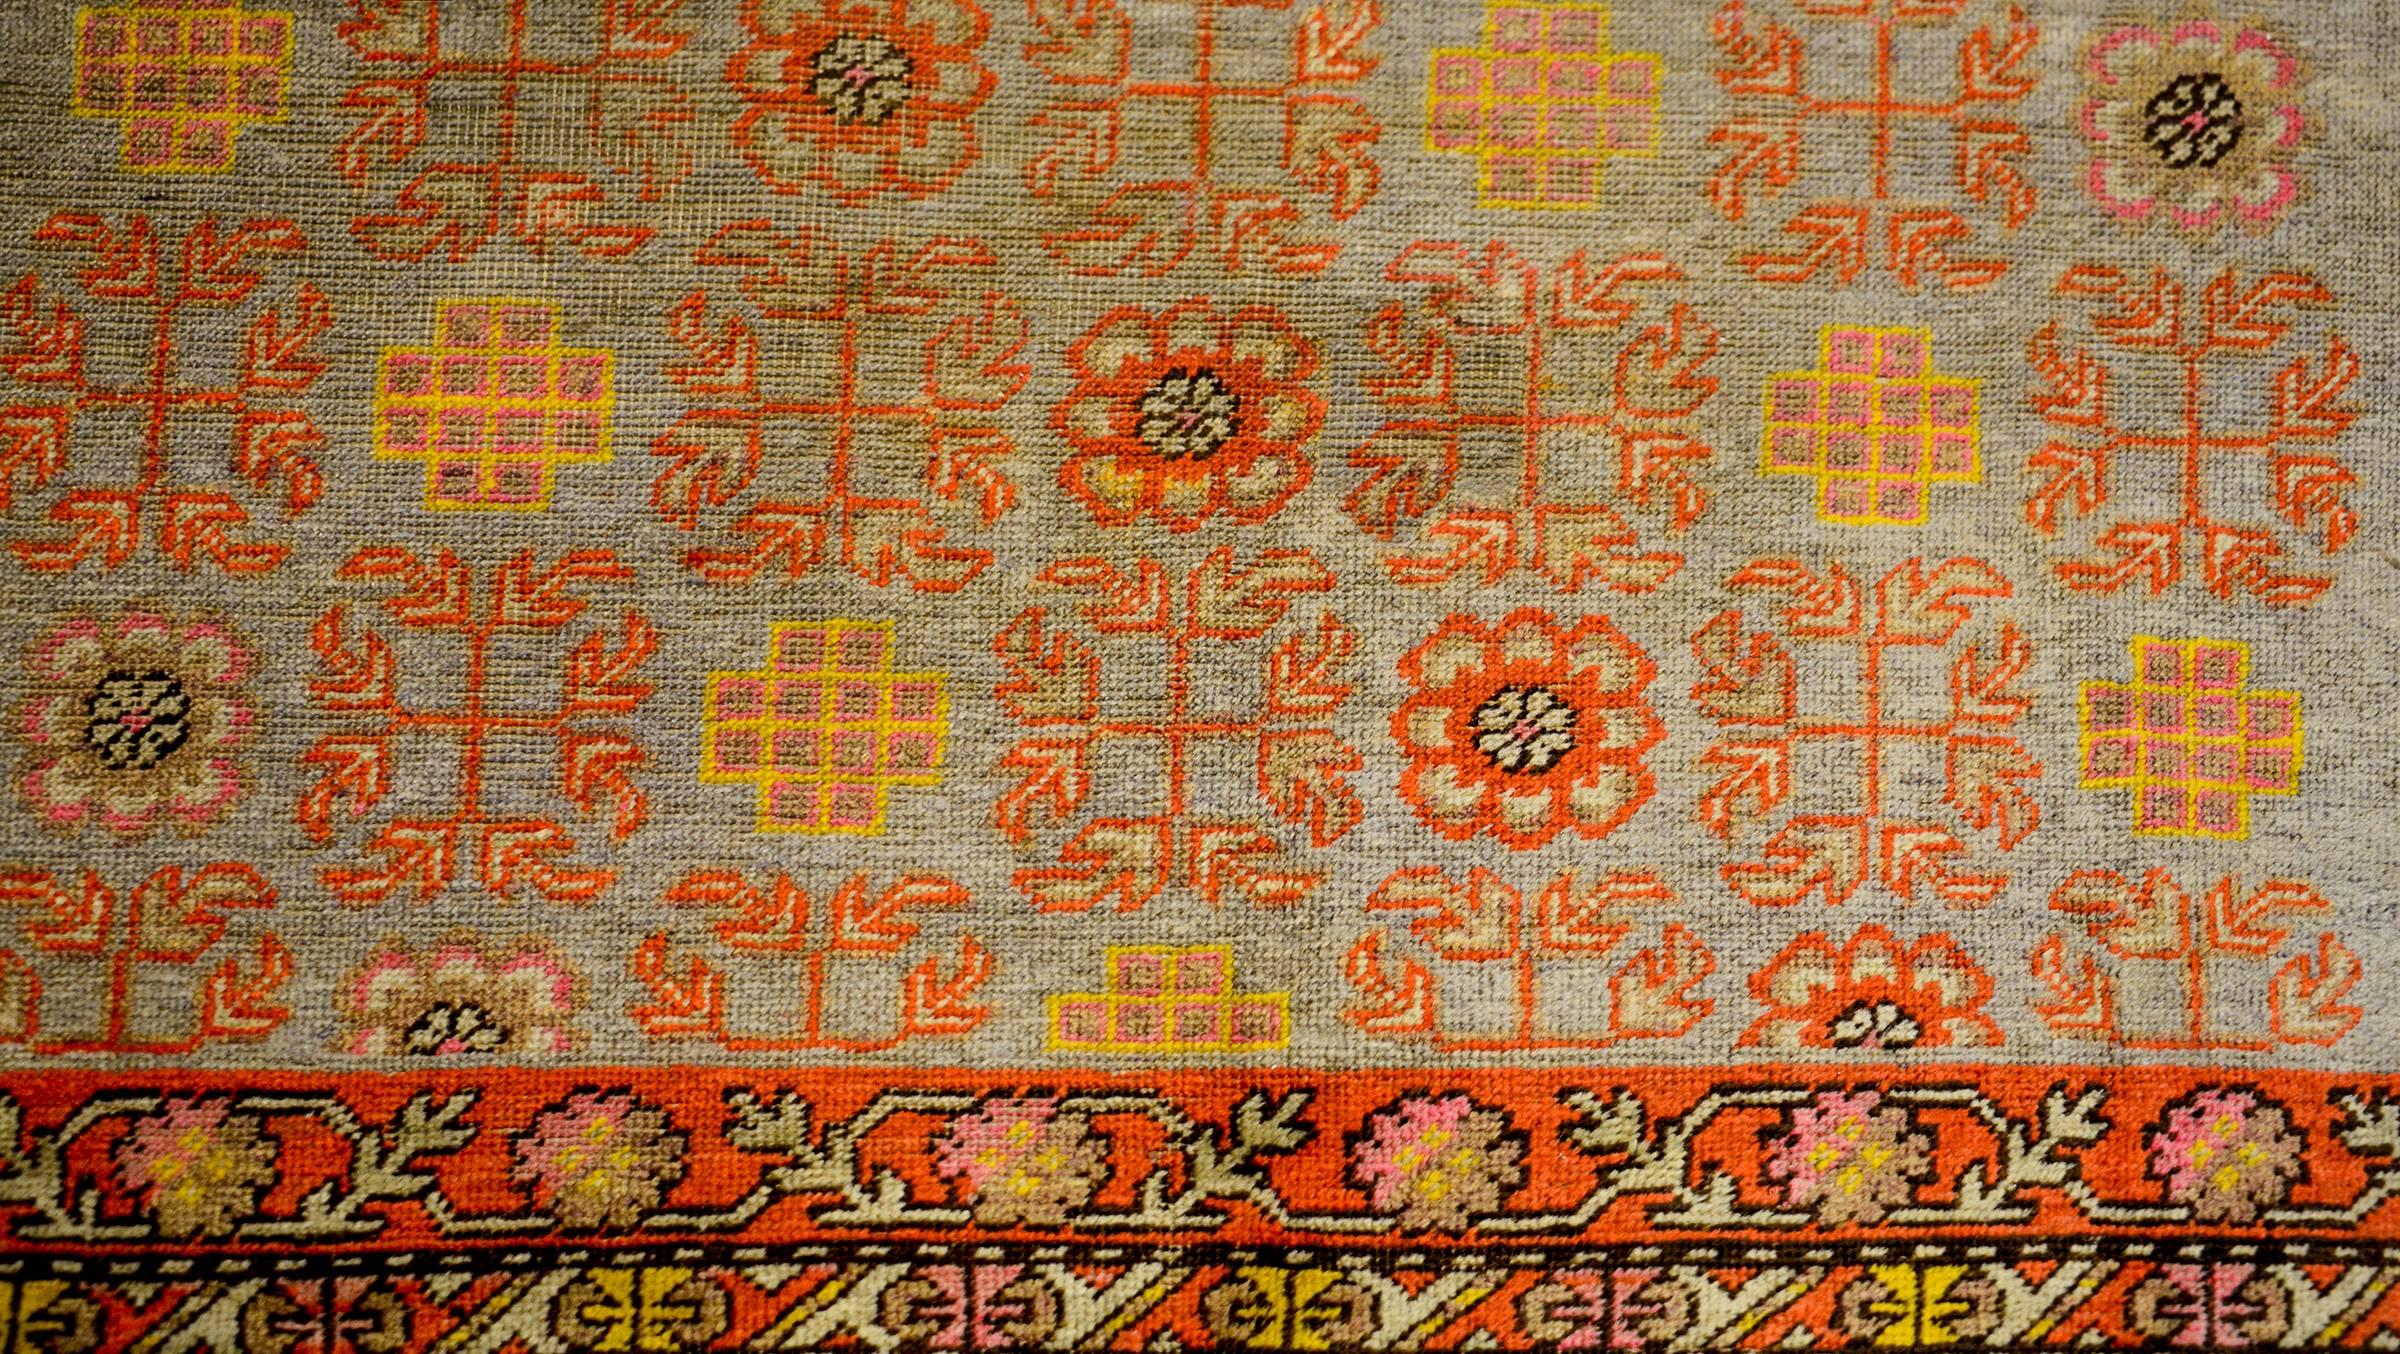 Magnifique tapis Khotan d'Asie centrale du début du XXe siècle, avec un magnifique motif de parternum alternant des fleurs, des feuilles et des nœuds sans fin, tissé dans une riche laine à teinture végétale cramoisie, or, rose et verte, sur un fond